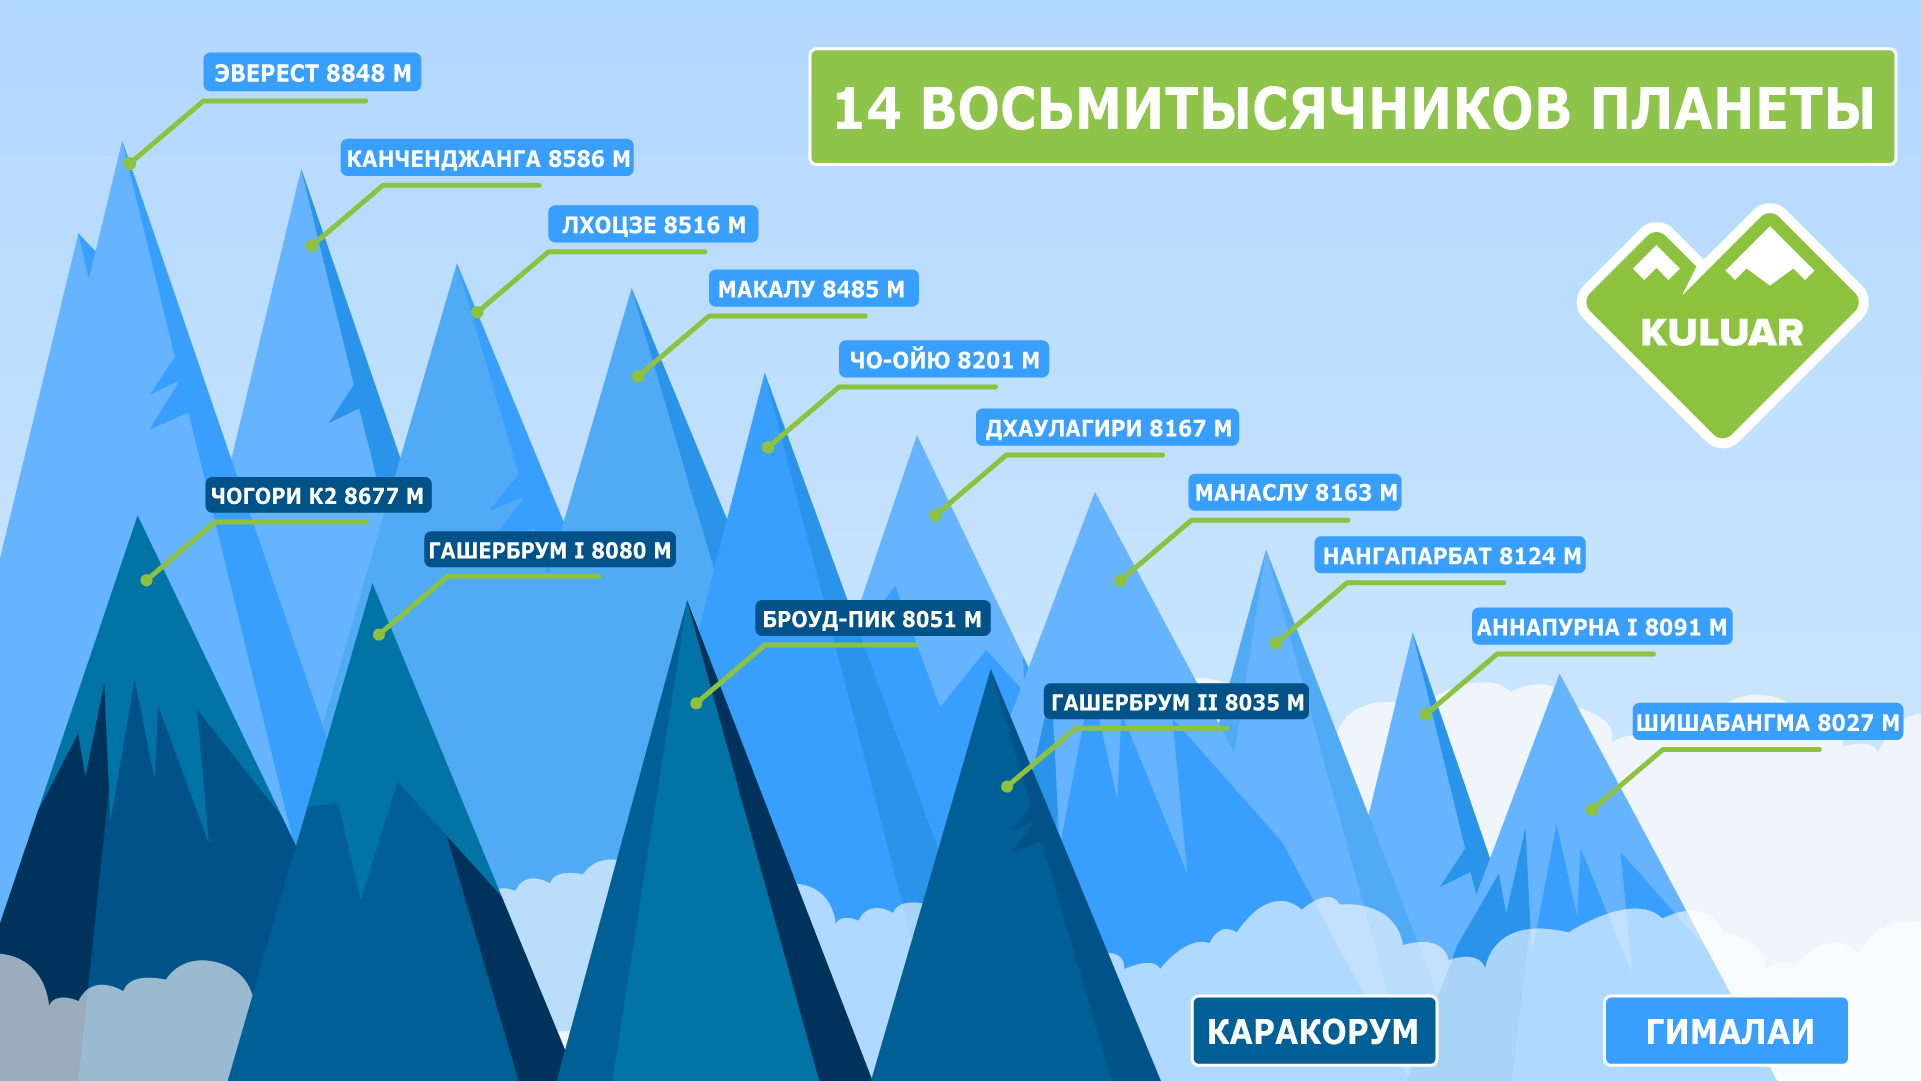 Какая гора занимает 2 место по высоте